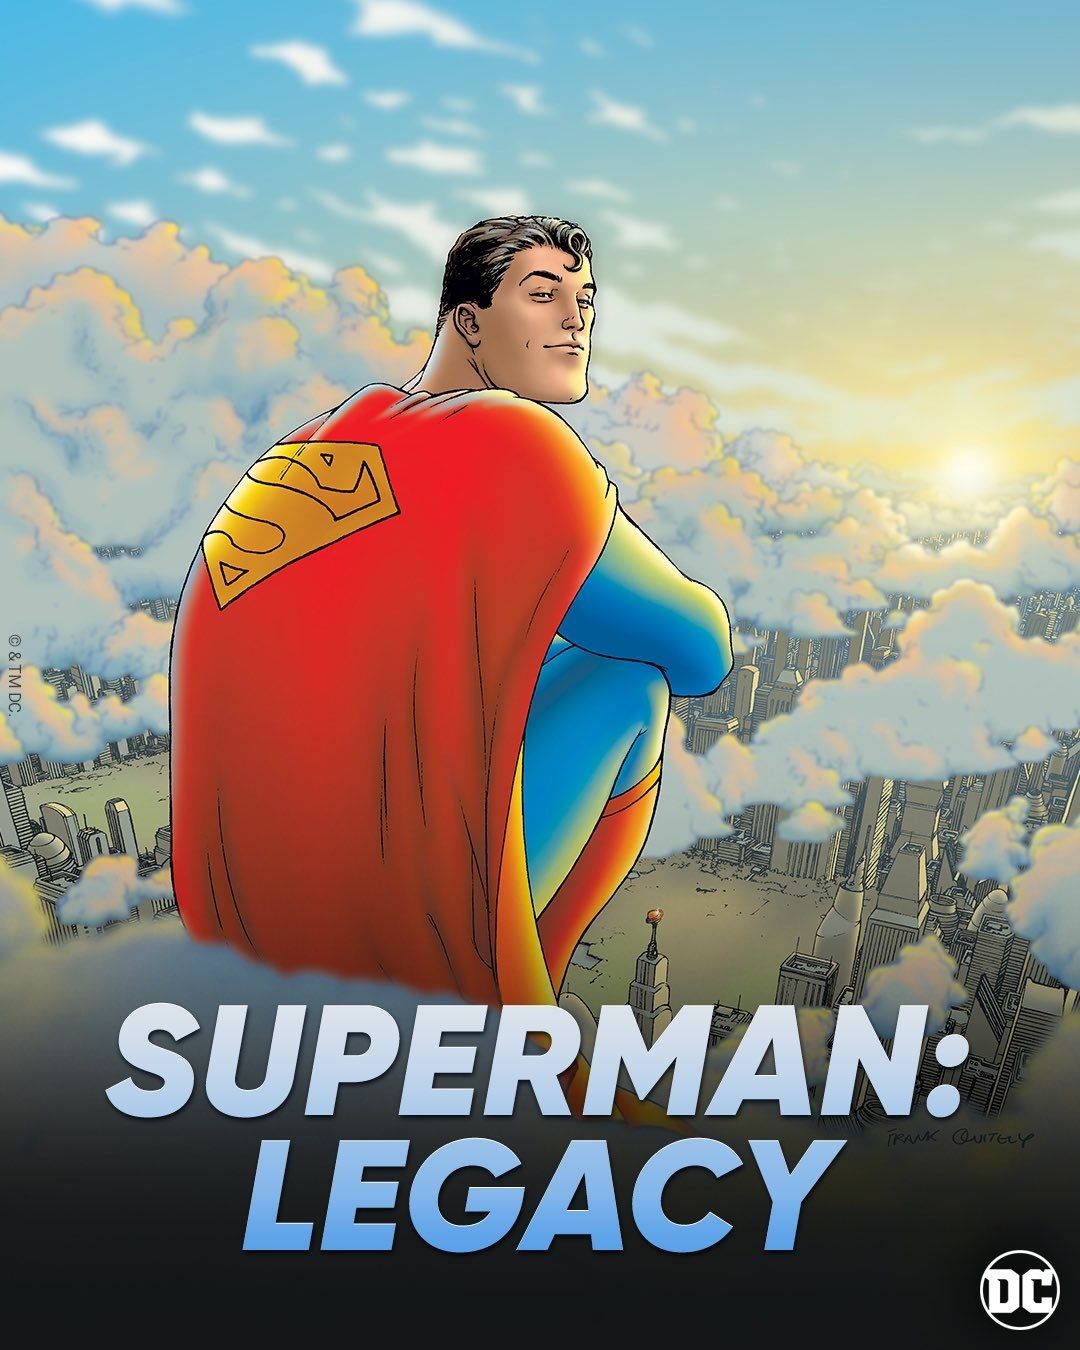 Pôster do legado do Superman